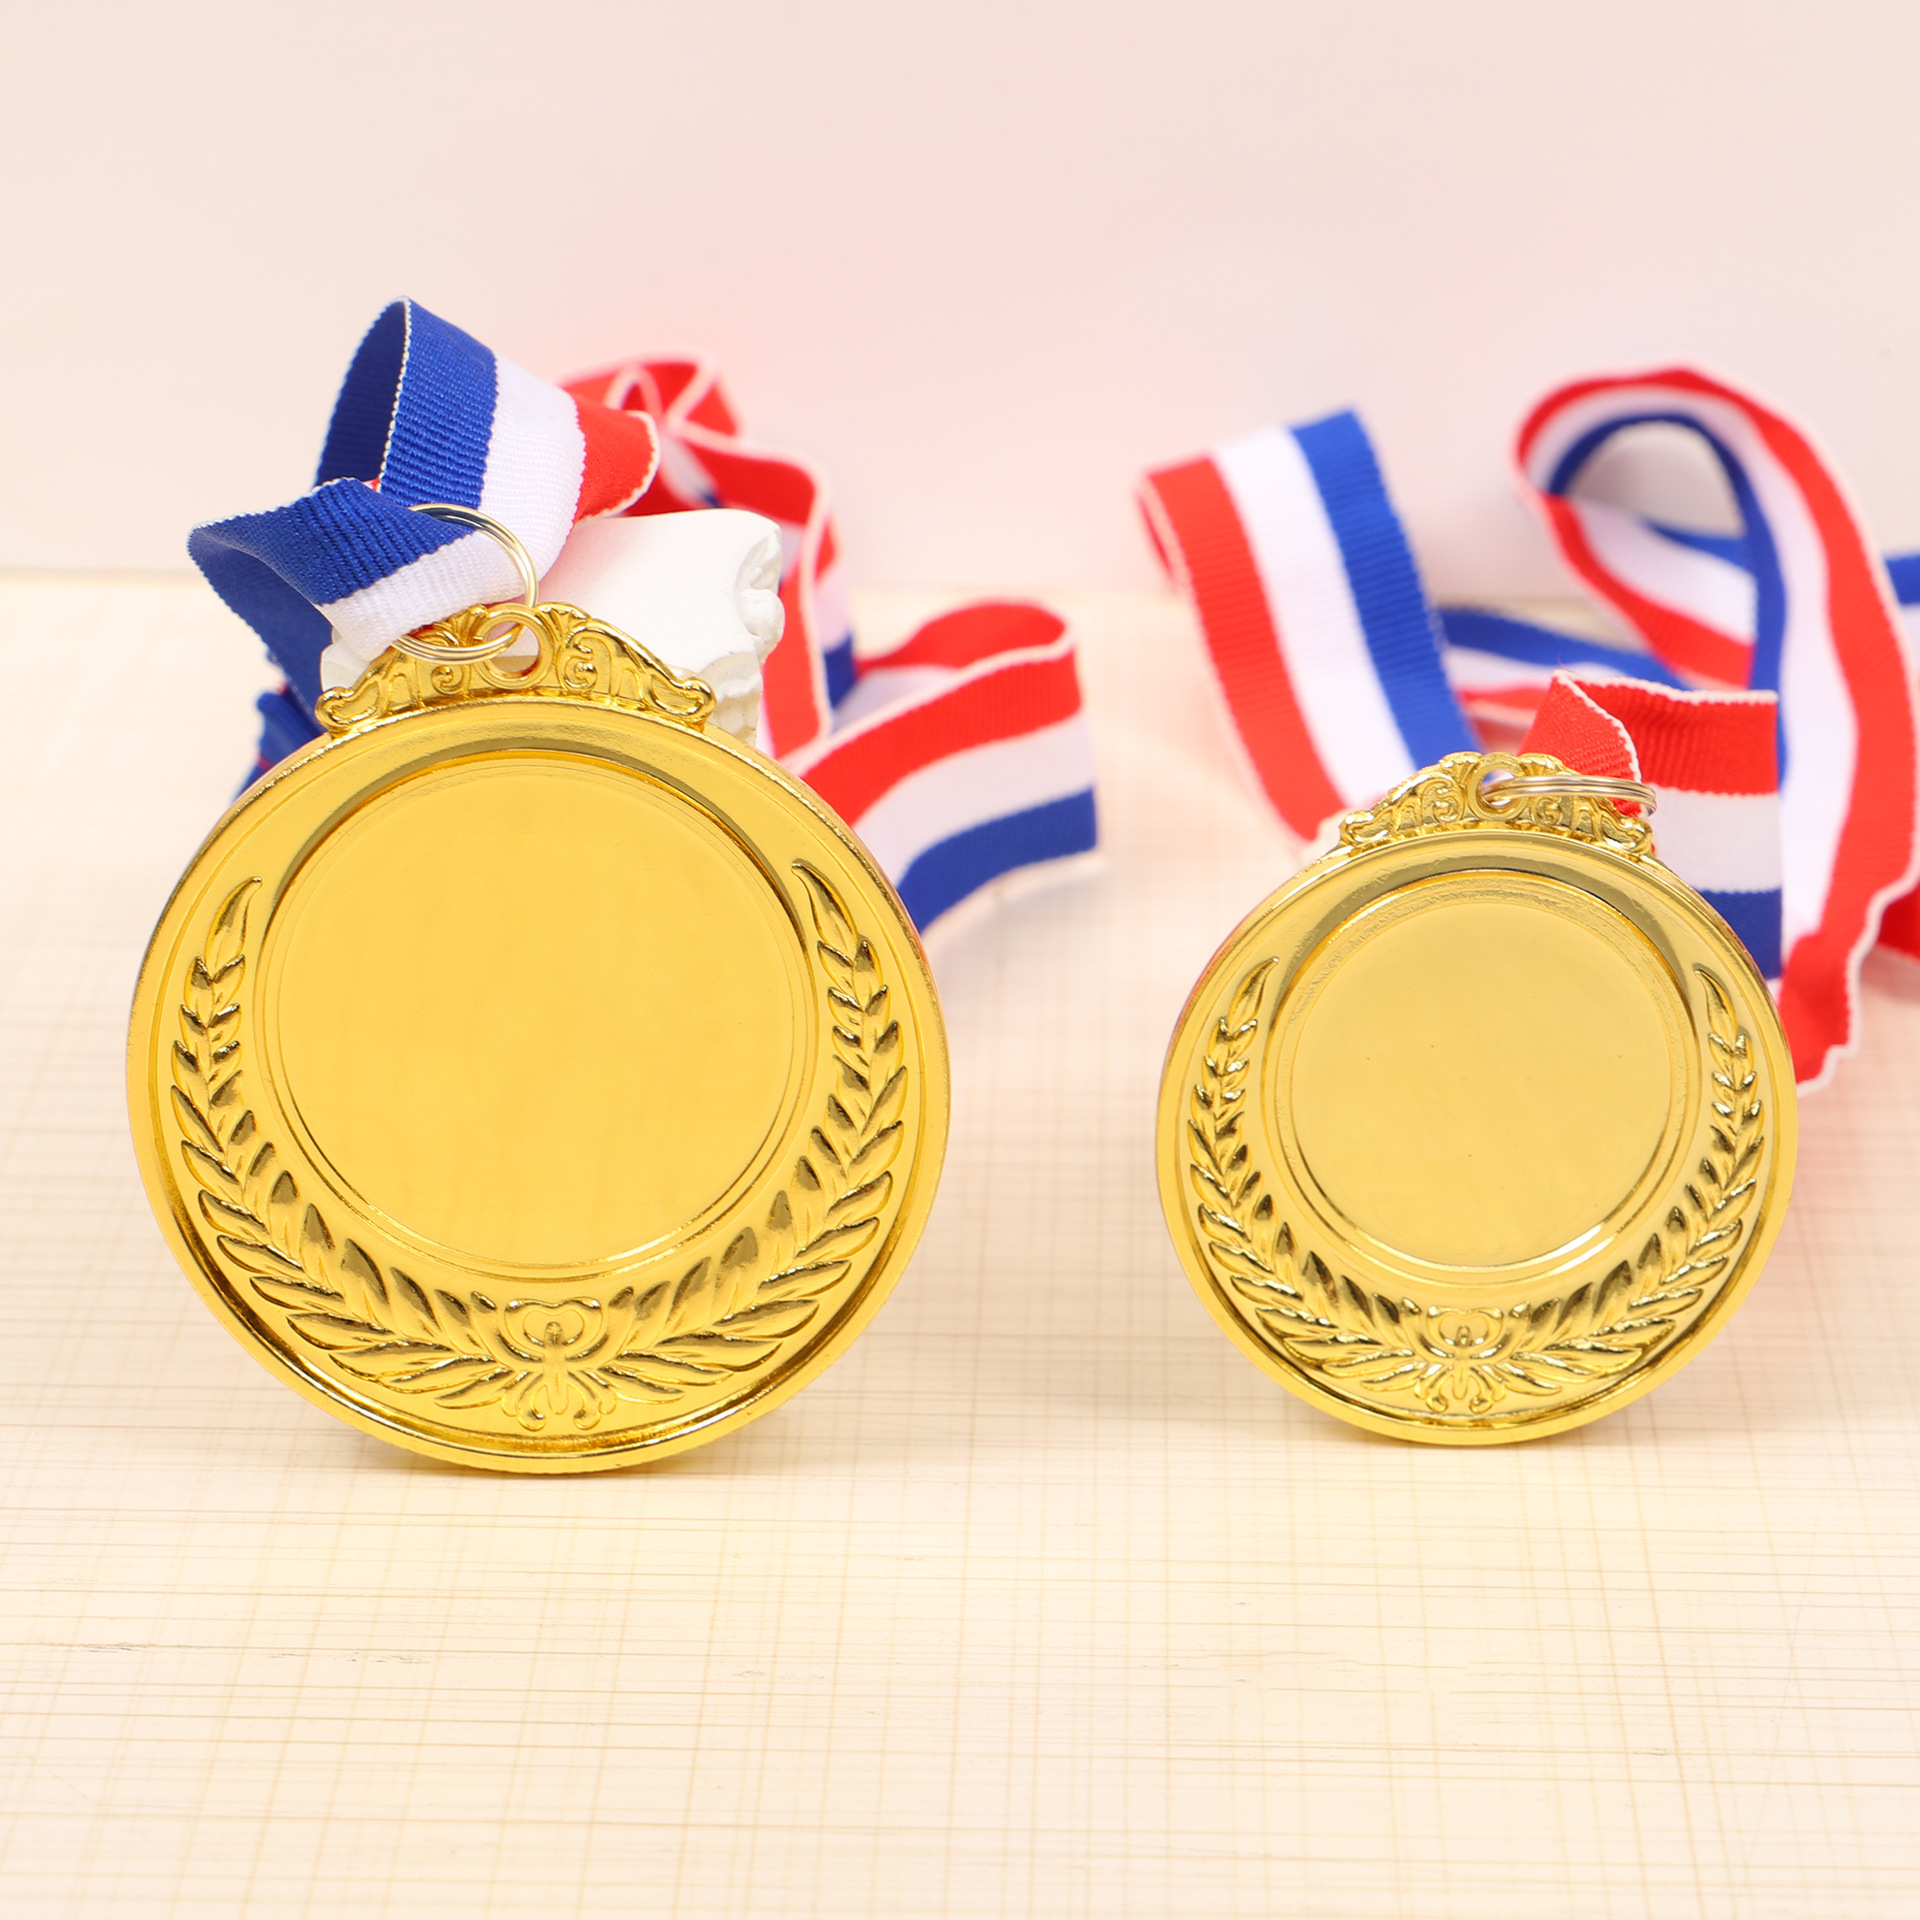 Médailles De Futbol personnalisées, médailles De Football, course De Taekwondo, prix De Football, ruban en métal doré, trophées et médailles vierges De Sport